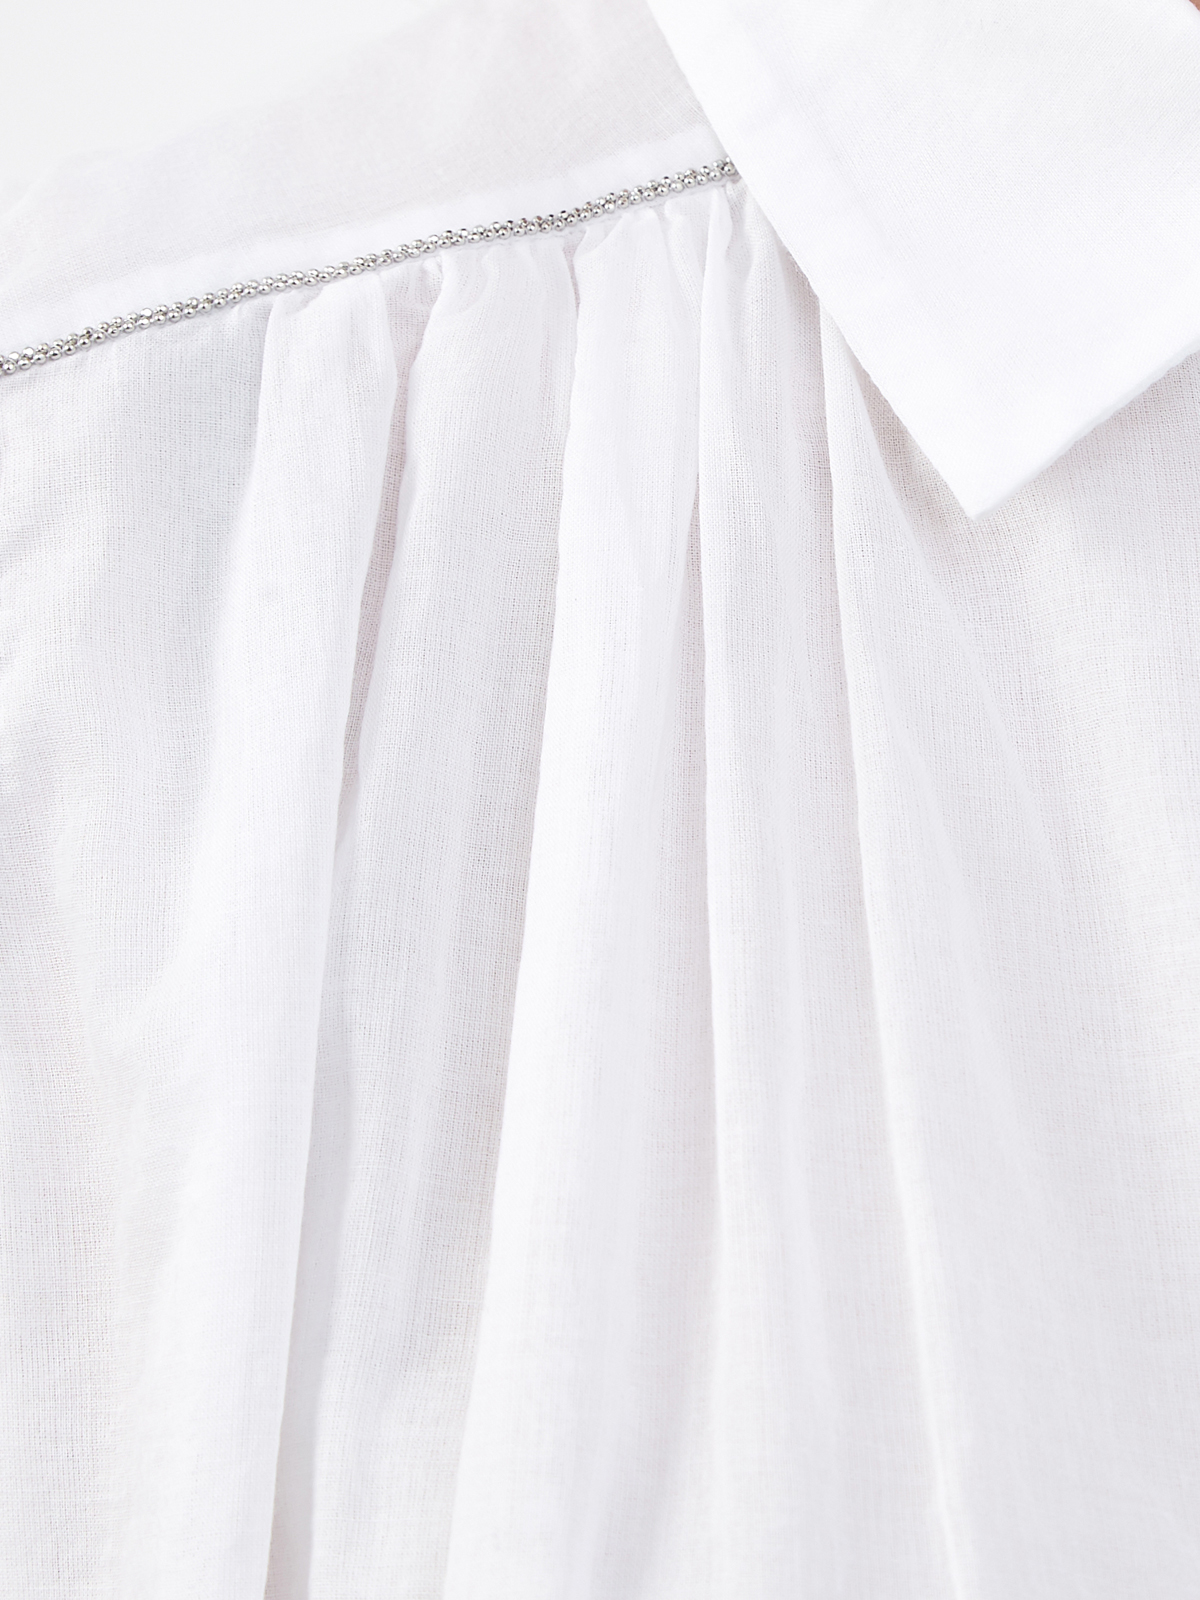 Удлиненная блуза асимметричного кроя из хлопка PESERICO, цвет белый, размер 40;42;44;46;38 - фото 5